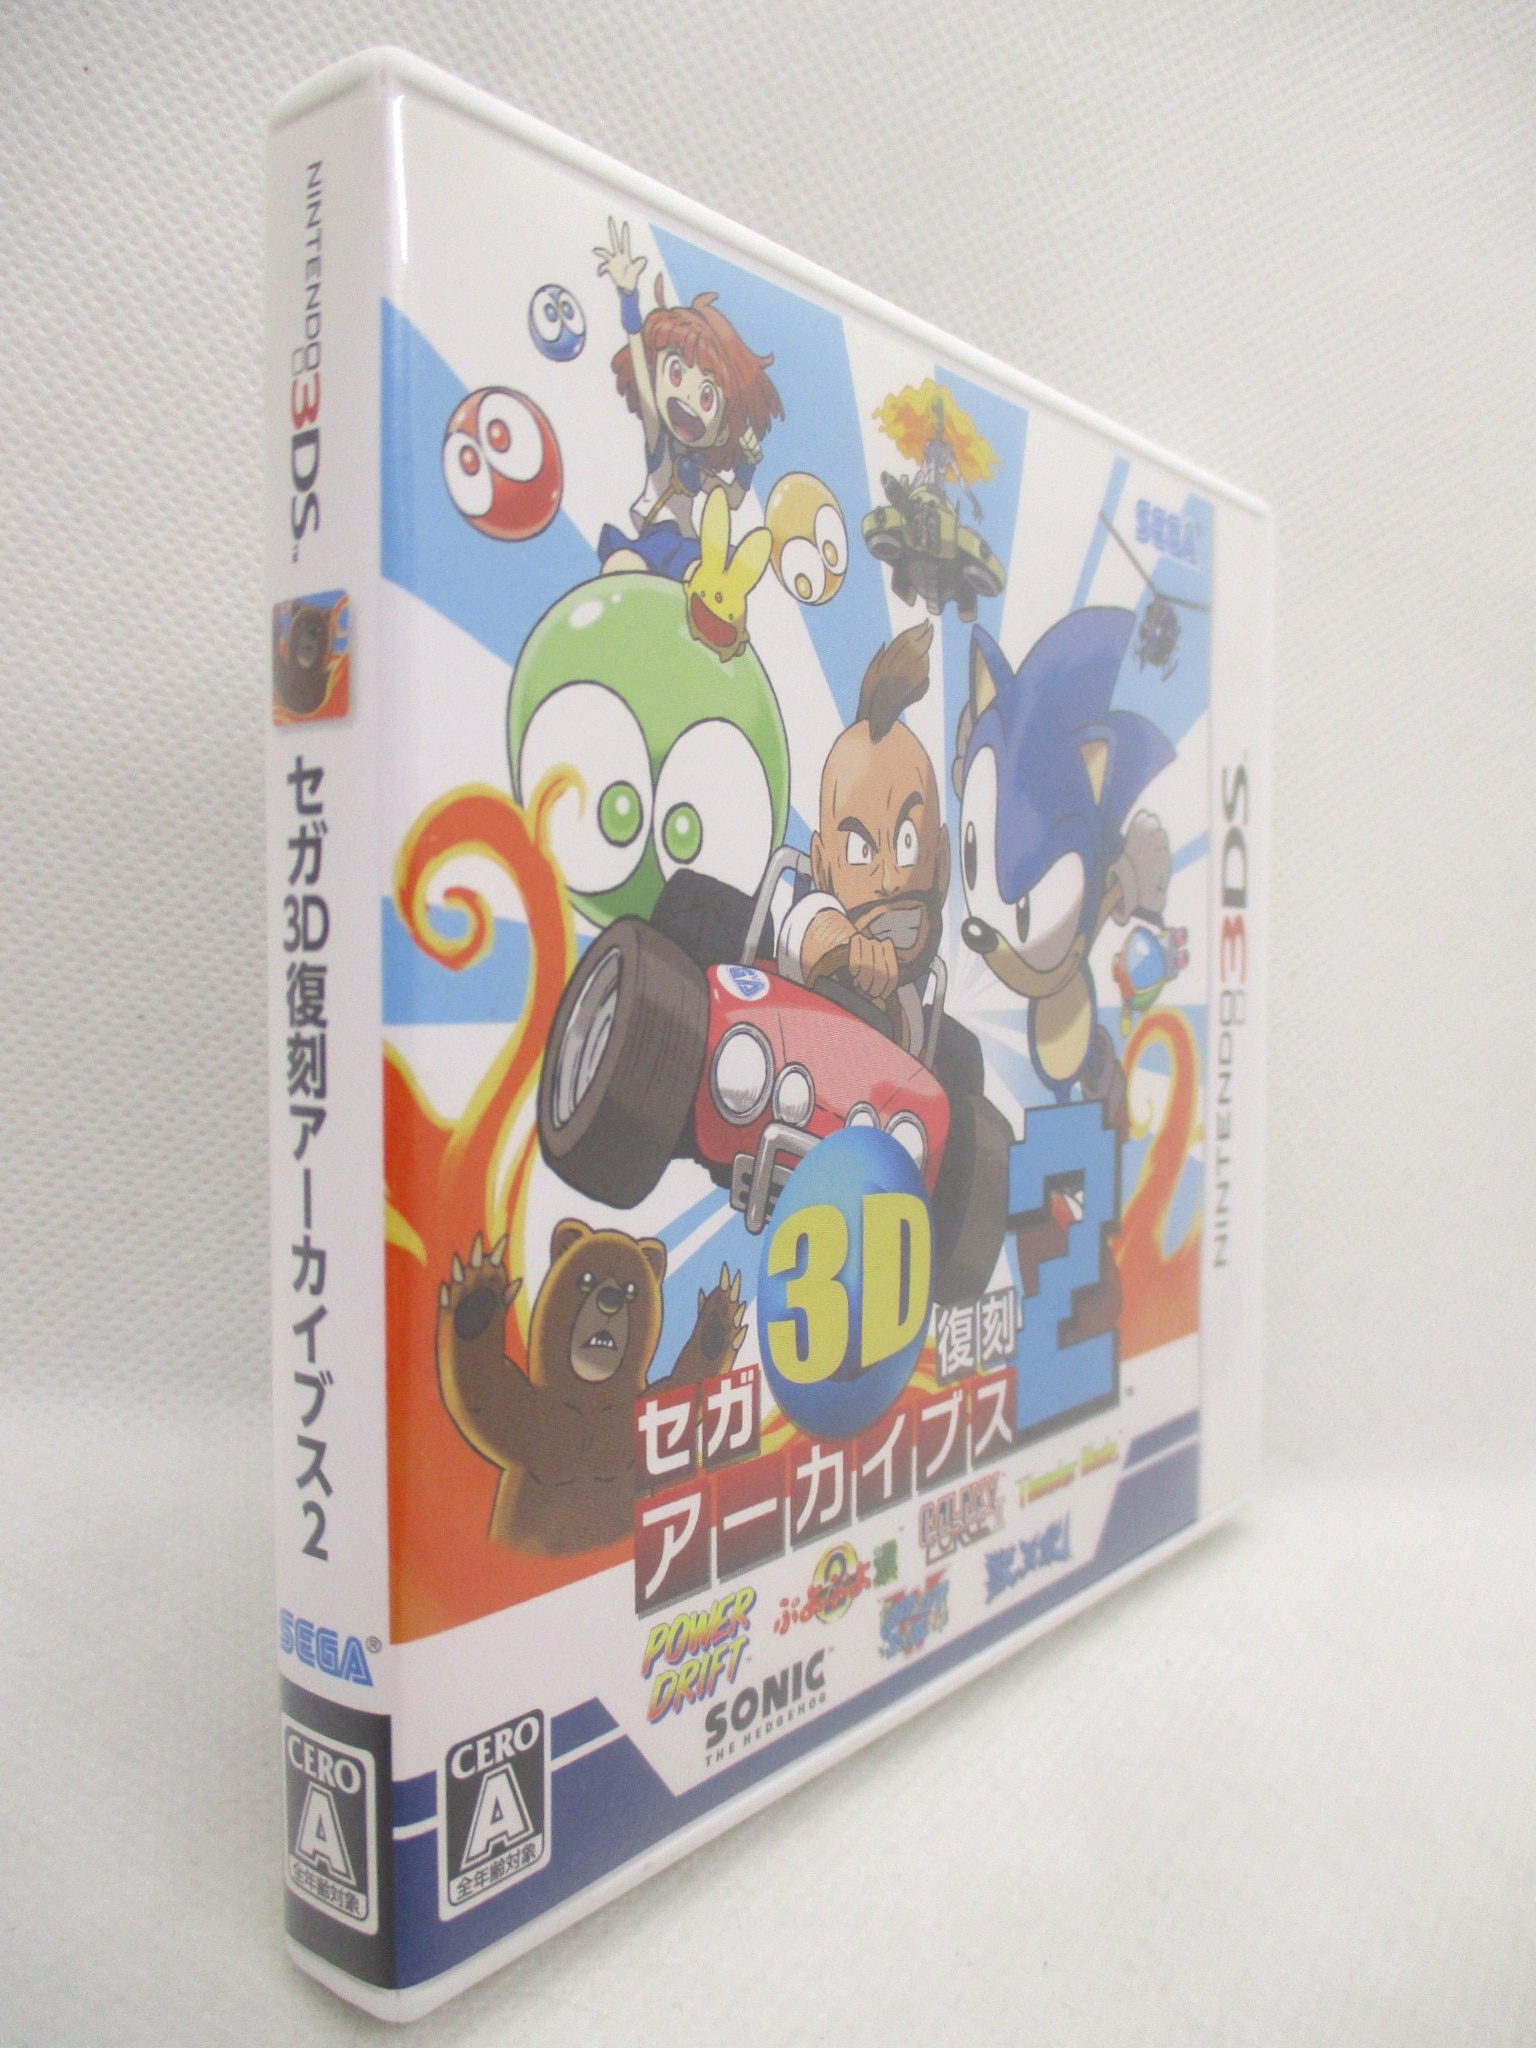 2280円 最新デザインの セガ3D復刻アーカイブス2 - 3DS